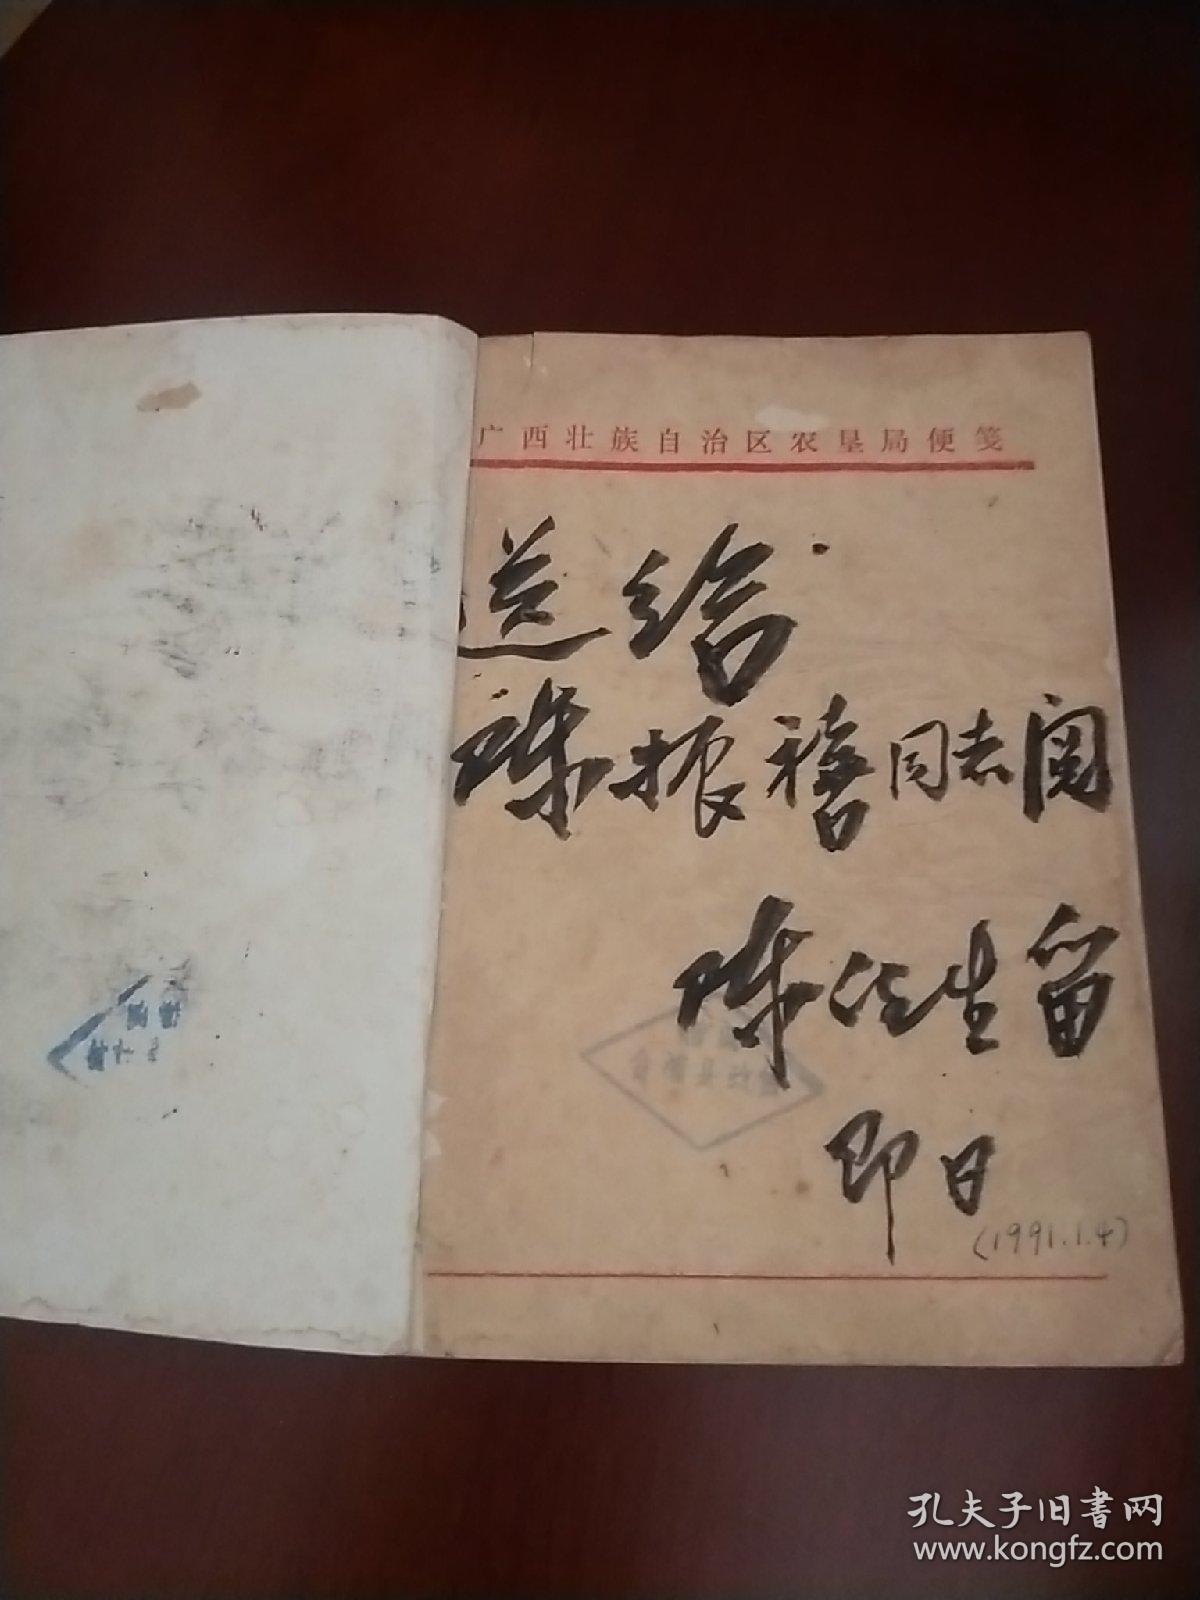 陈铭枢纪念文集〔1889--1989〕